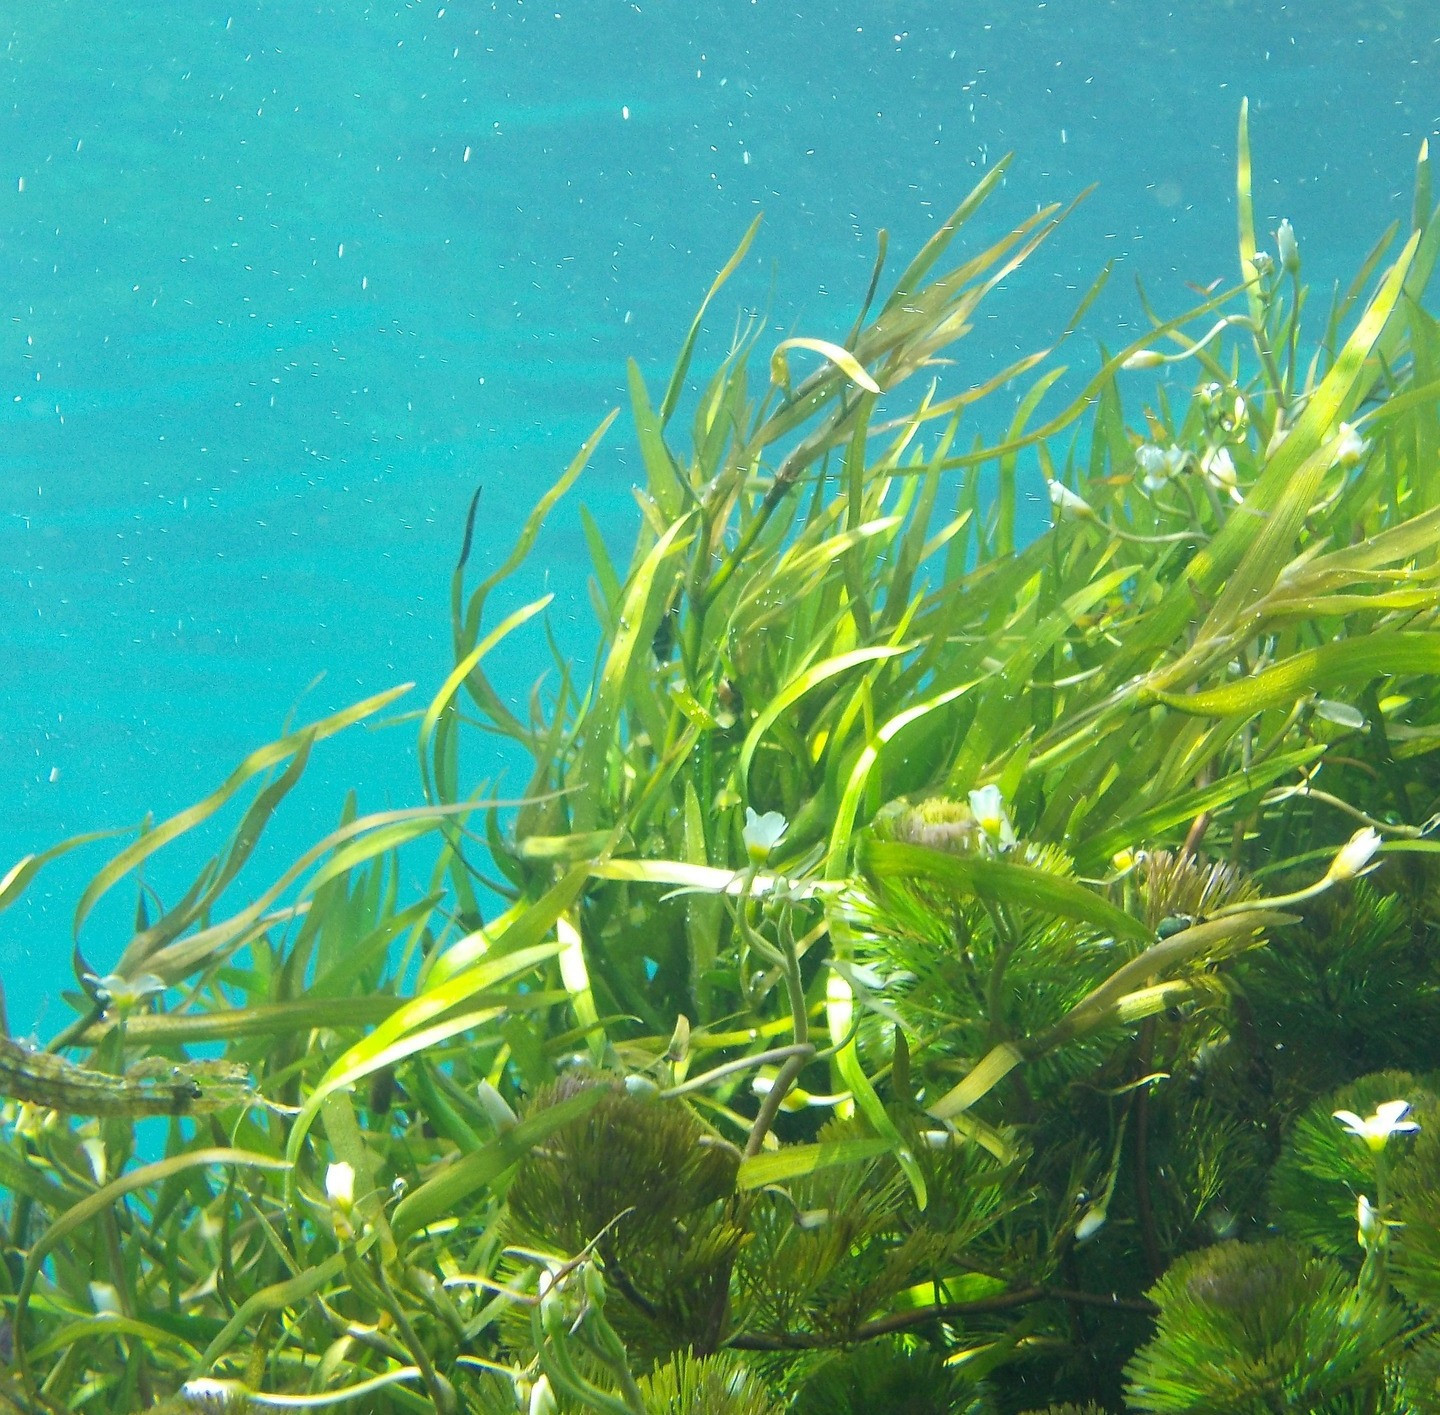 Des algues pour capter le CO2 - Smart for climate #24